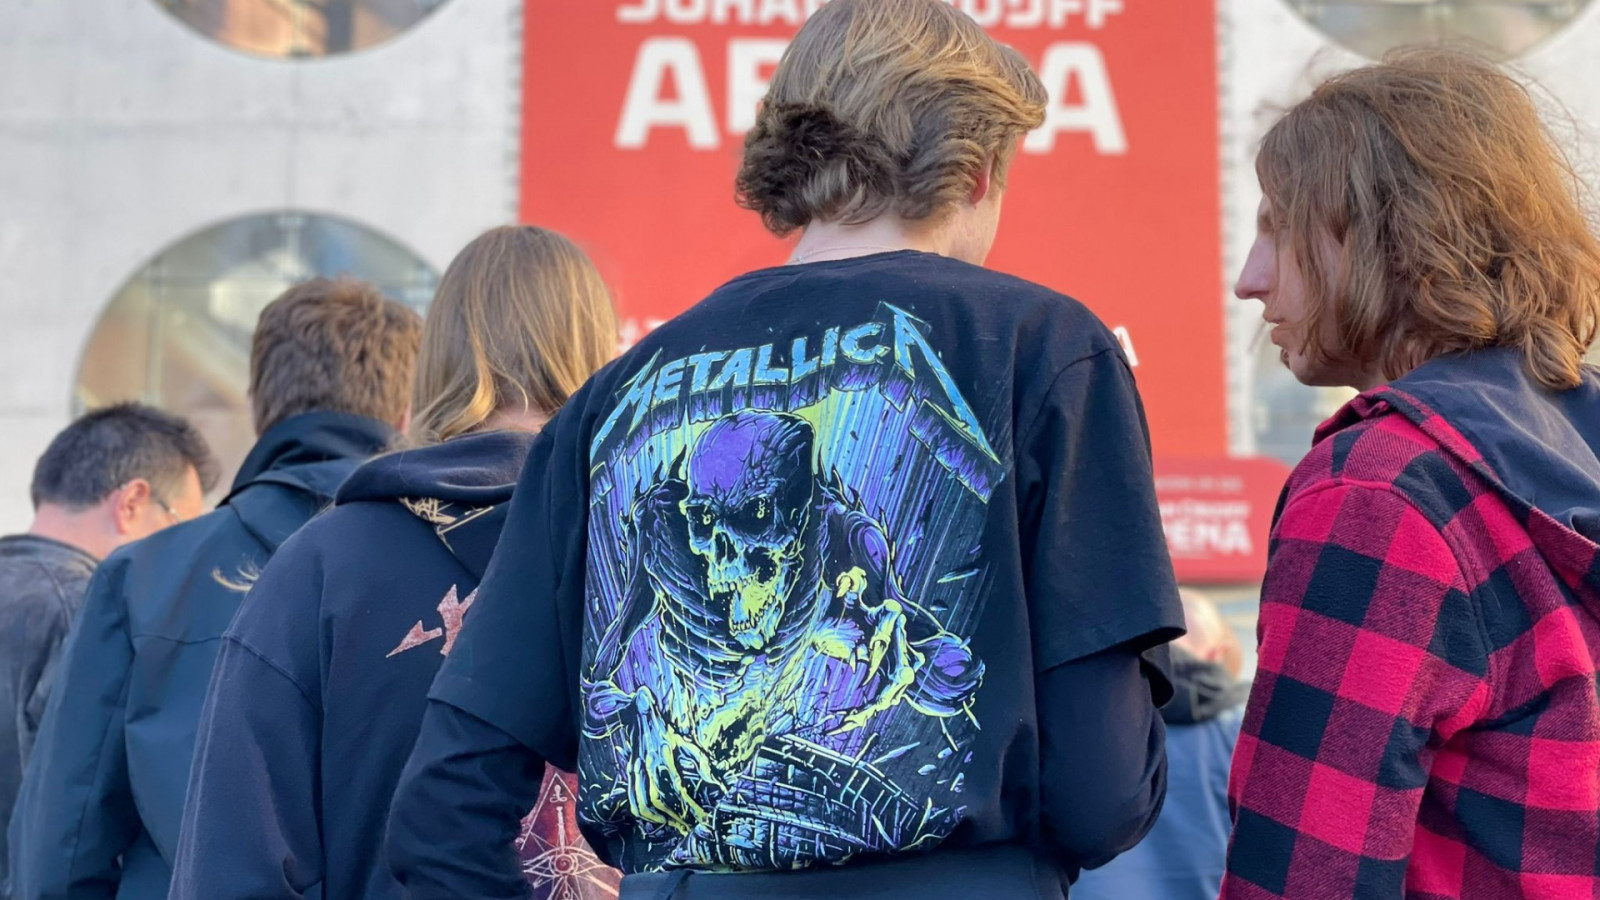 Concert Metallica in de Johan Cruijff Arena